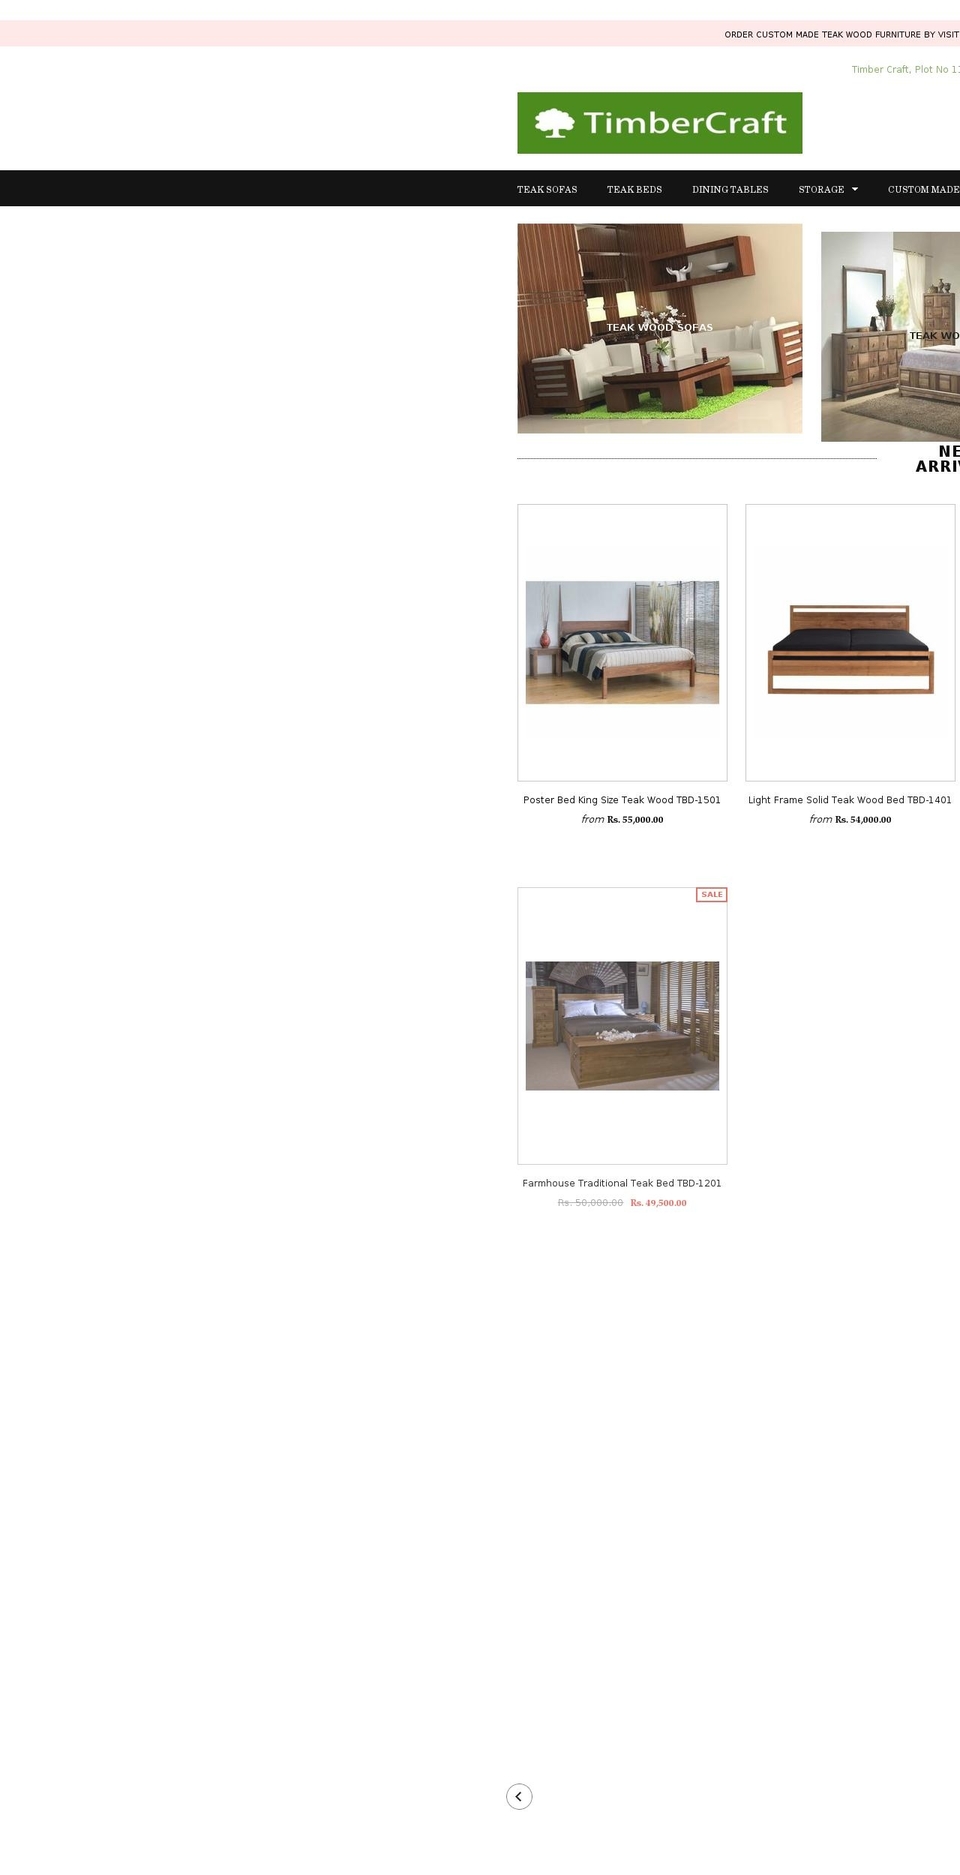 timbercraft.in shopify website screenshot